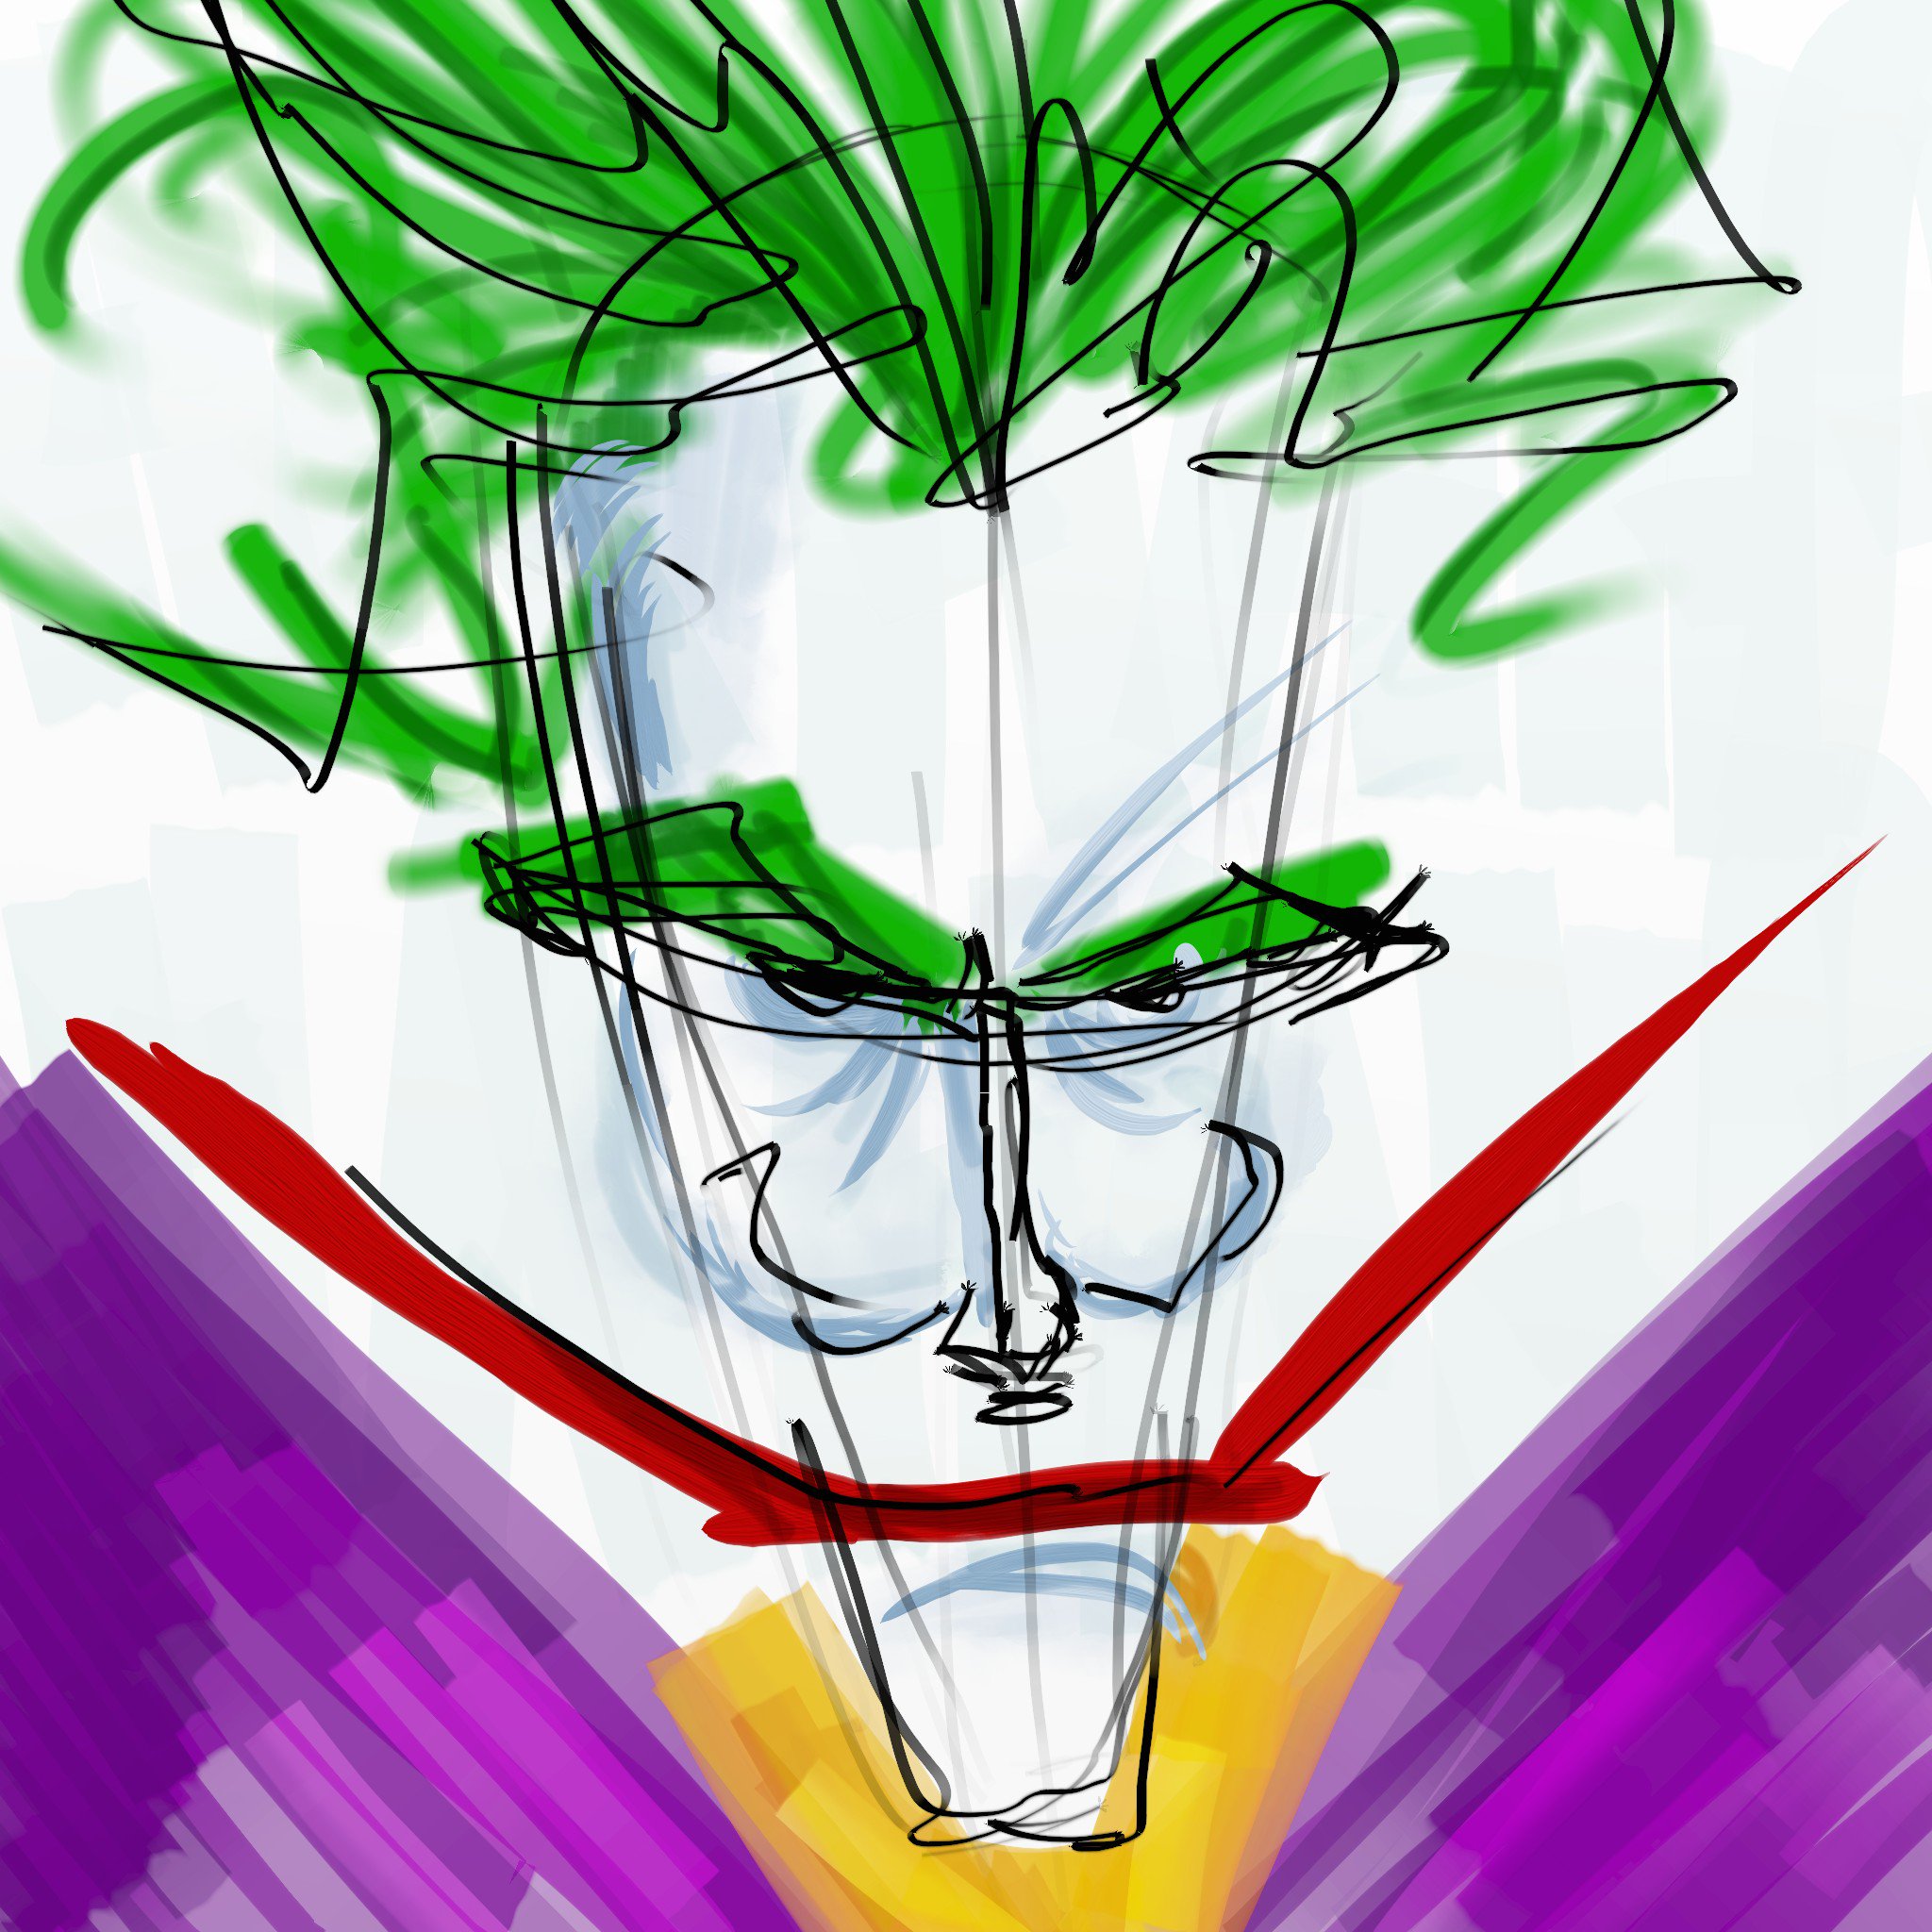 Bonus: Joker